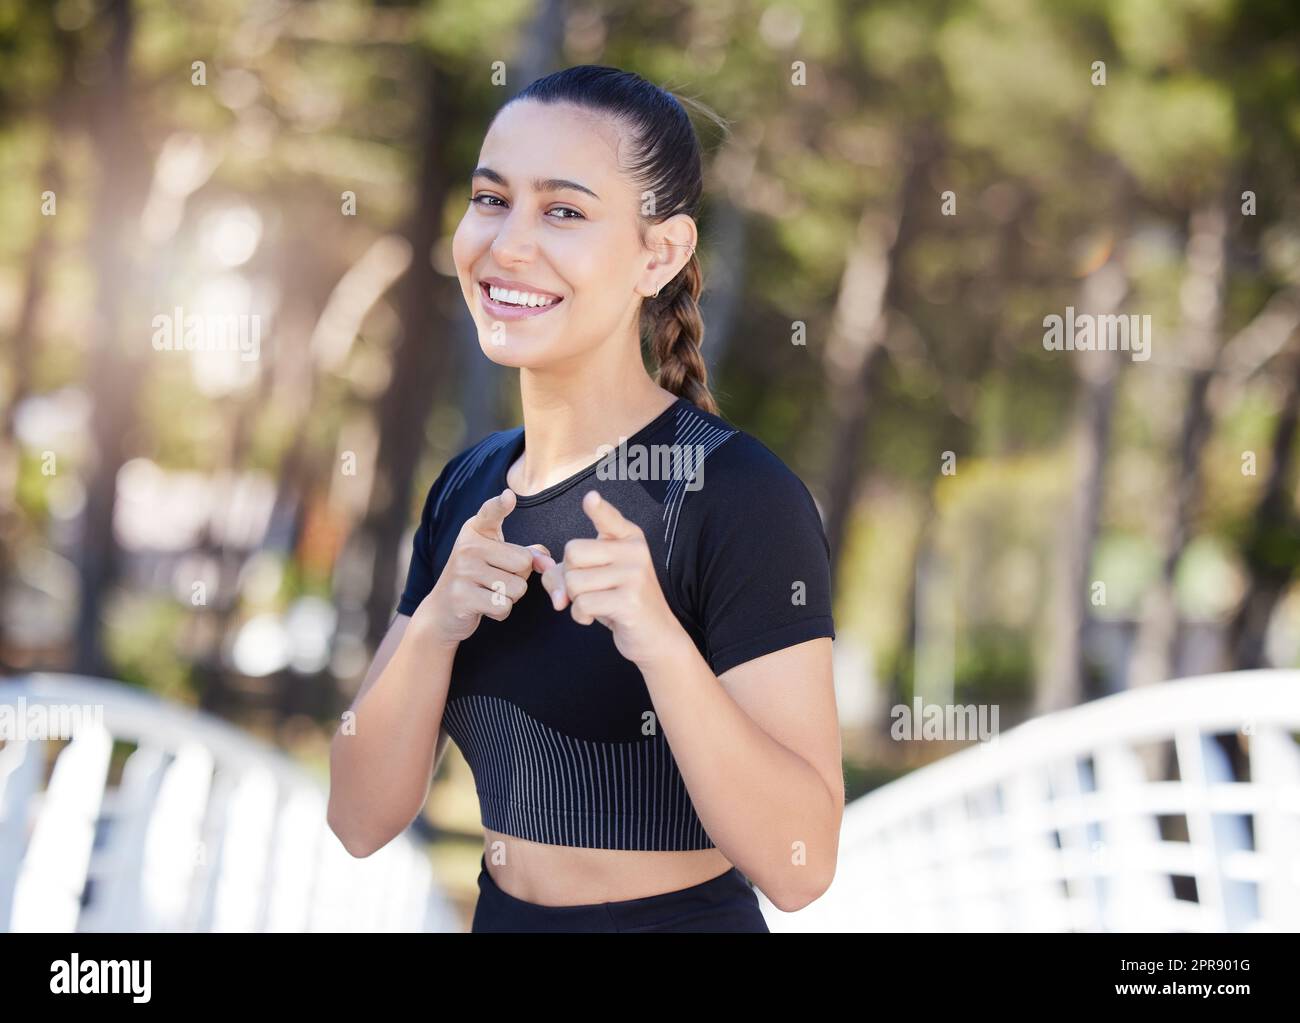 Fitnessfrau lächelt und zeigt mit dem Zeigefinger auf die Kamera, während sie im Park läuft. Fröhliche Sportlerin motiviert dich, zu trainieren und für deine Gesundheit zu sorgen Stockfoto